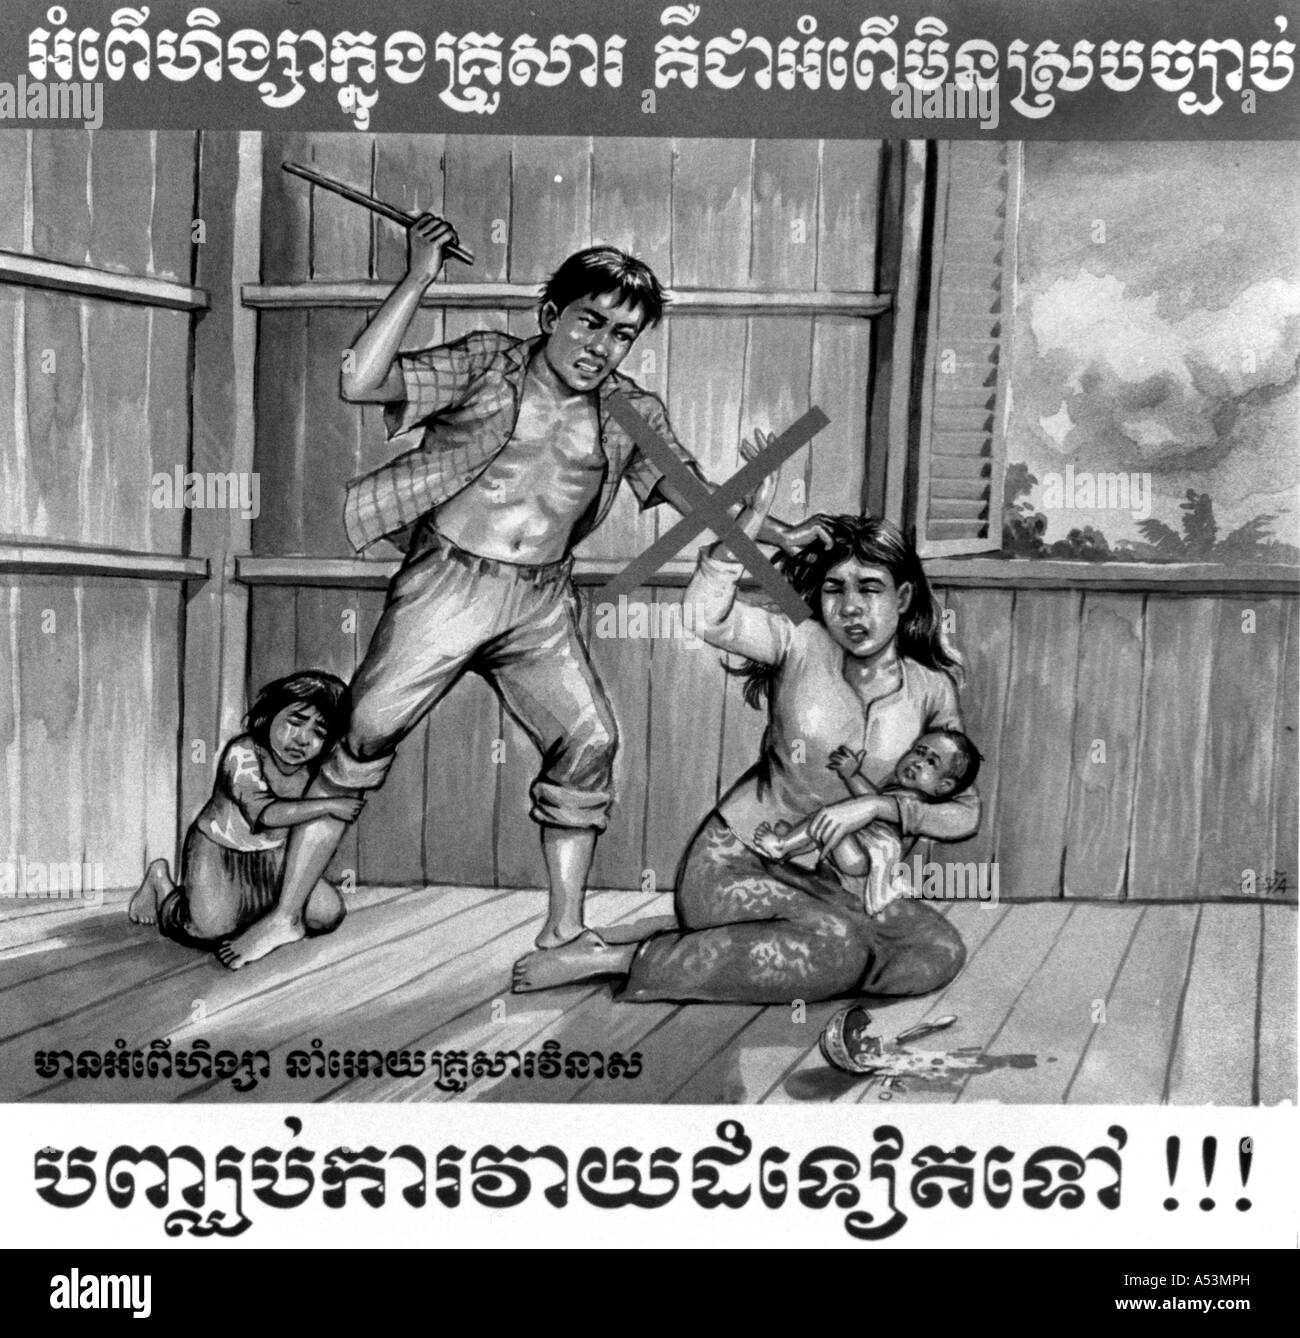 Painet ha1443 268 in bianco e nero la famiglia anti violenza domestica poster phnom penh cambogia paese nazione in via di sviluppo meno Foto Stock